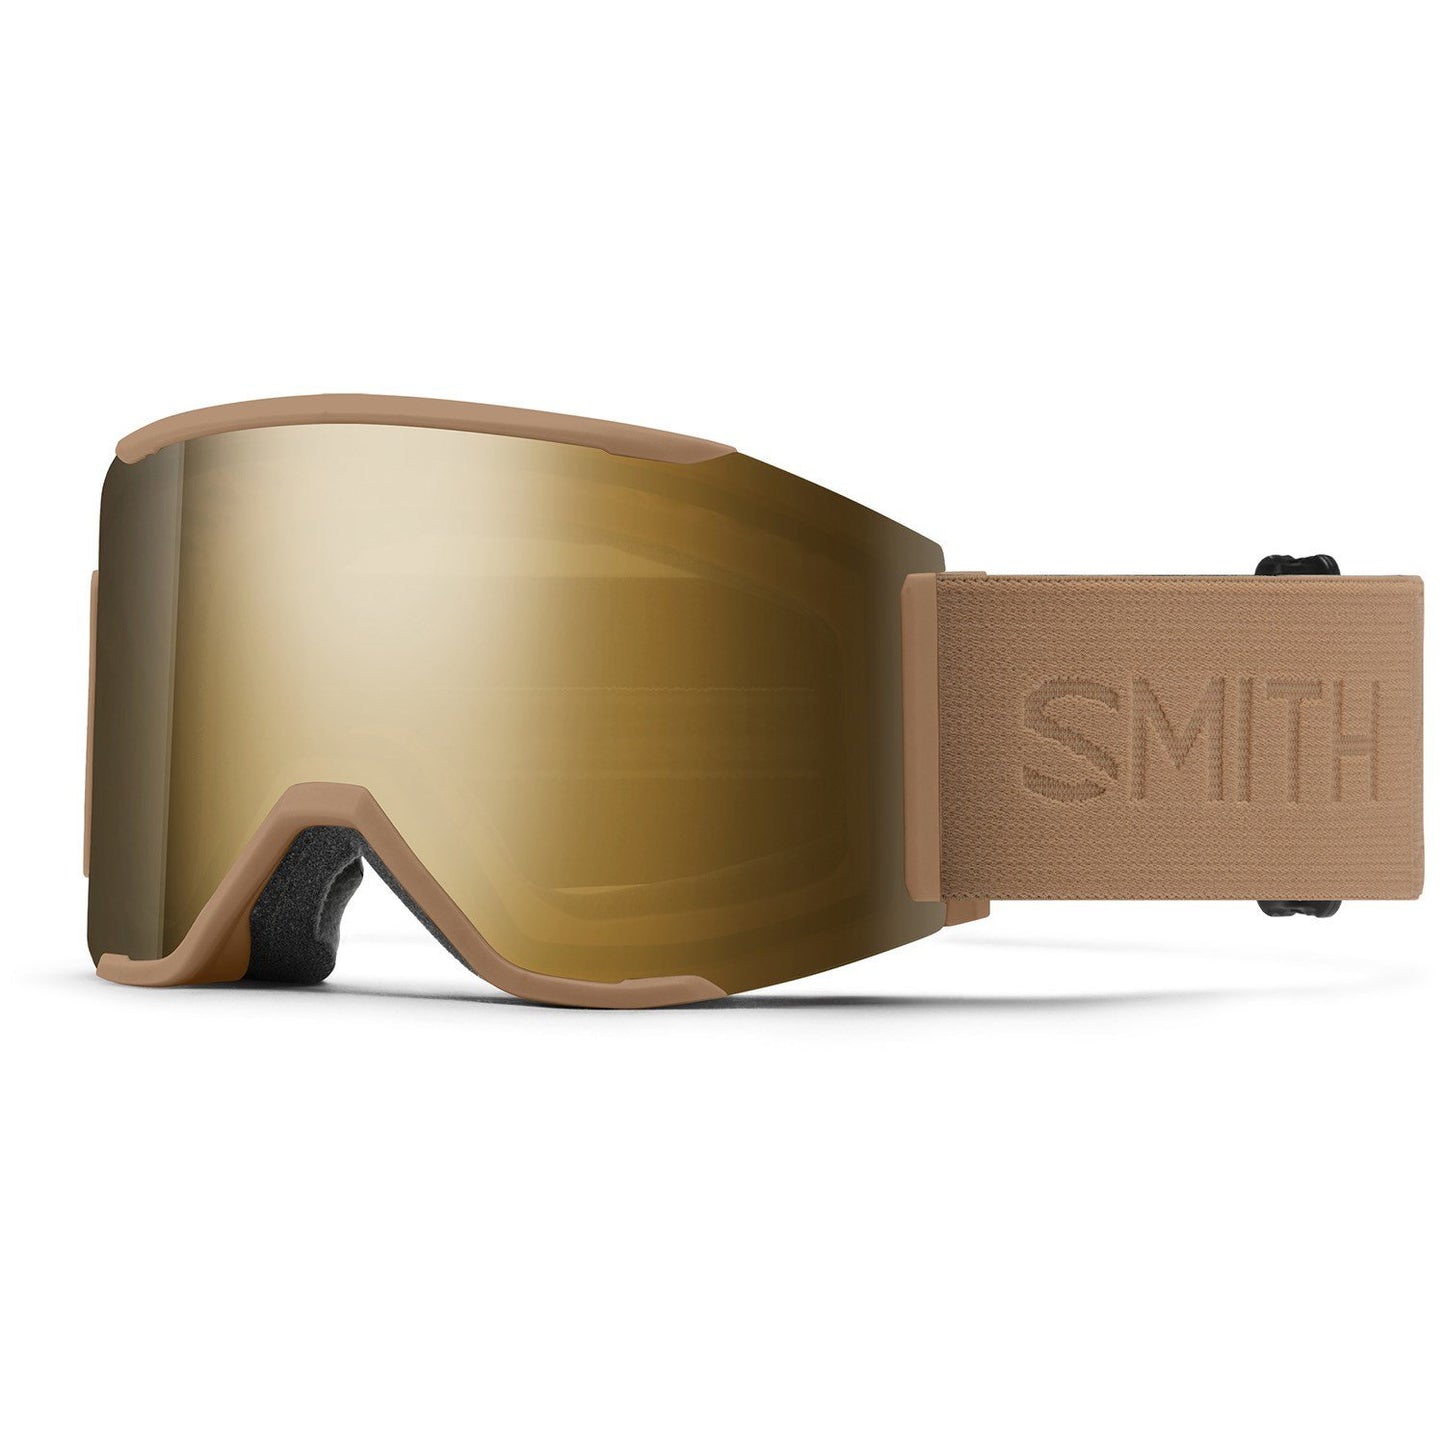 Smith Squad MAG Goggles